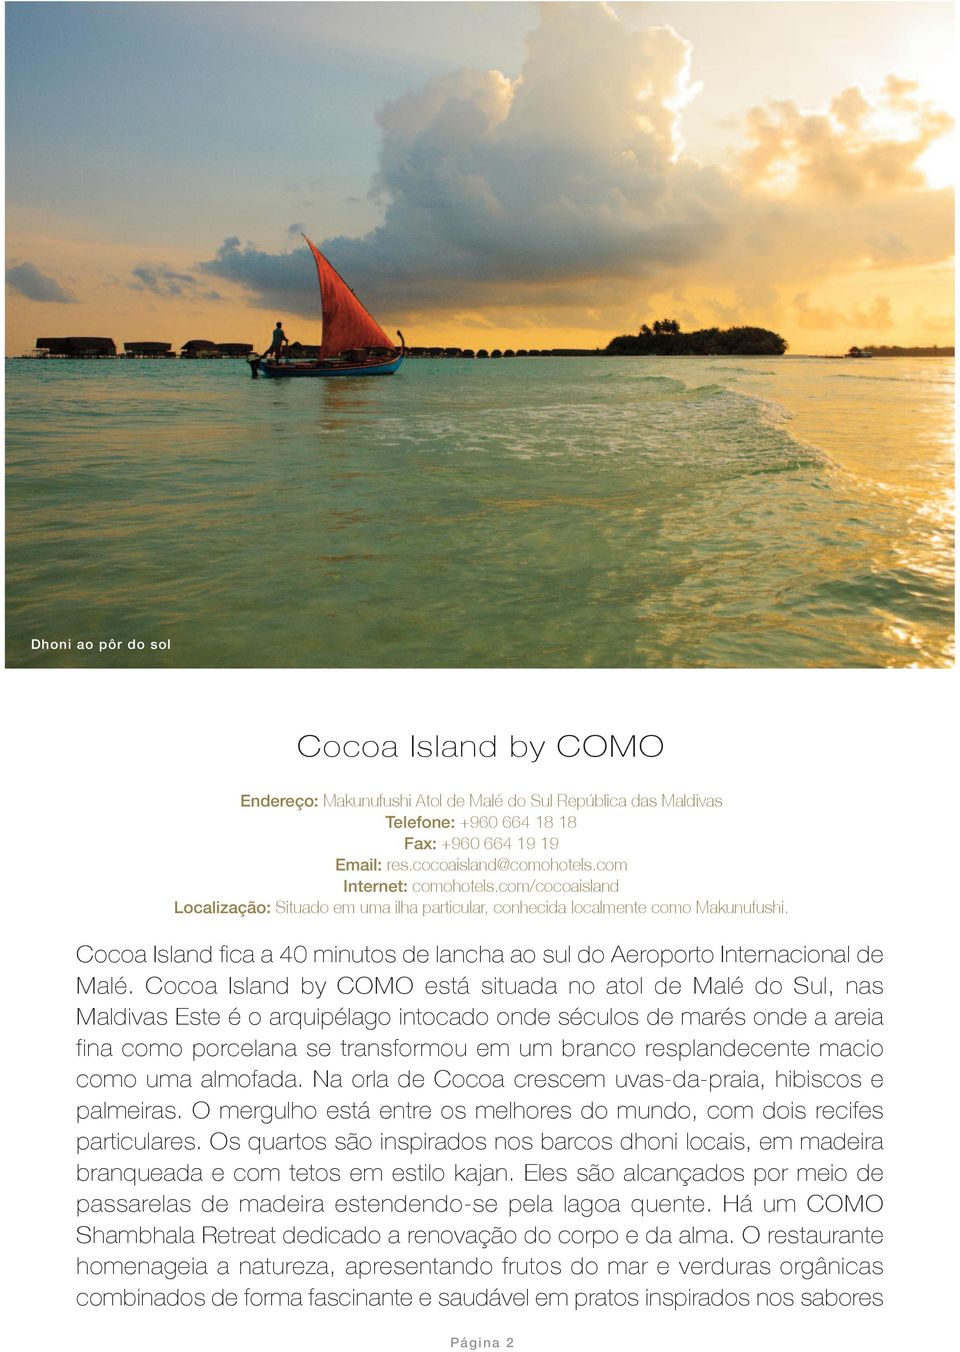 Cocoa Isand by COMO está situada no ato de Maé do Su, nas Madivas Este é o arquipéago intocado onde sécuos de marés onde a areia fina como porceana se transformou em um branco respandecente macio